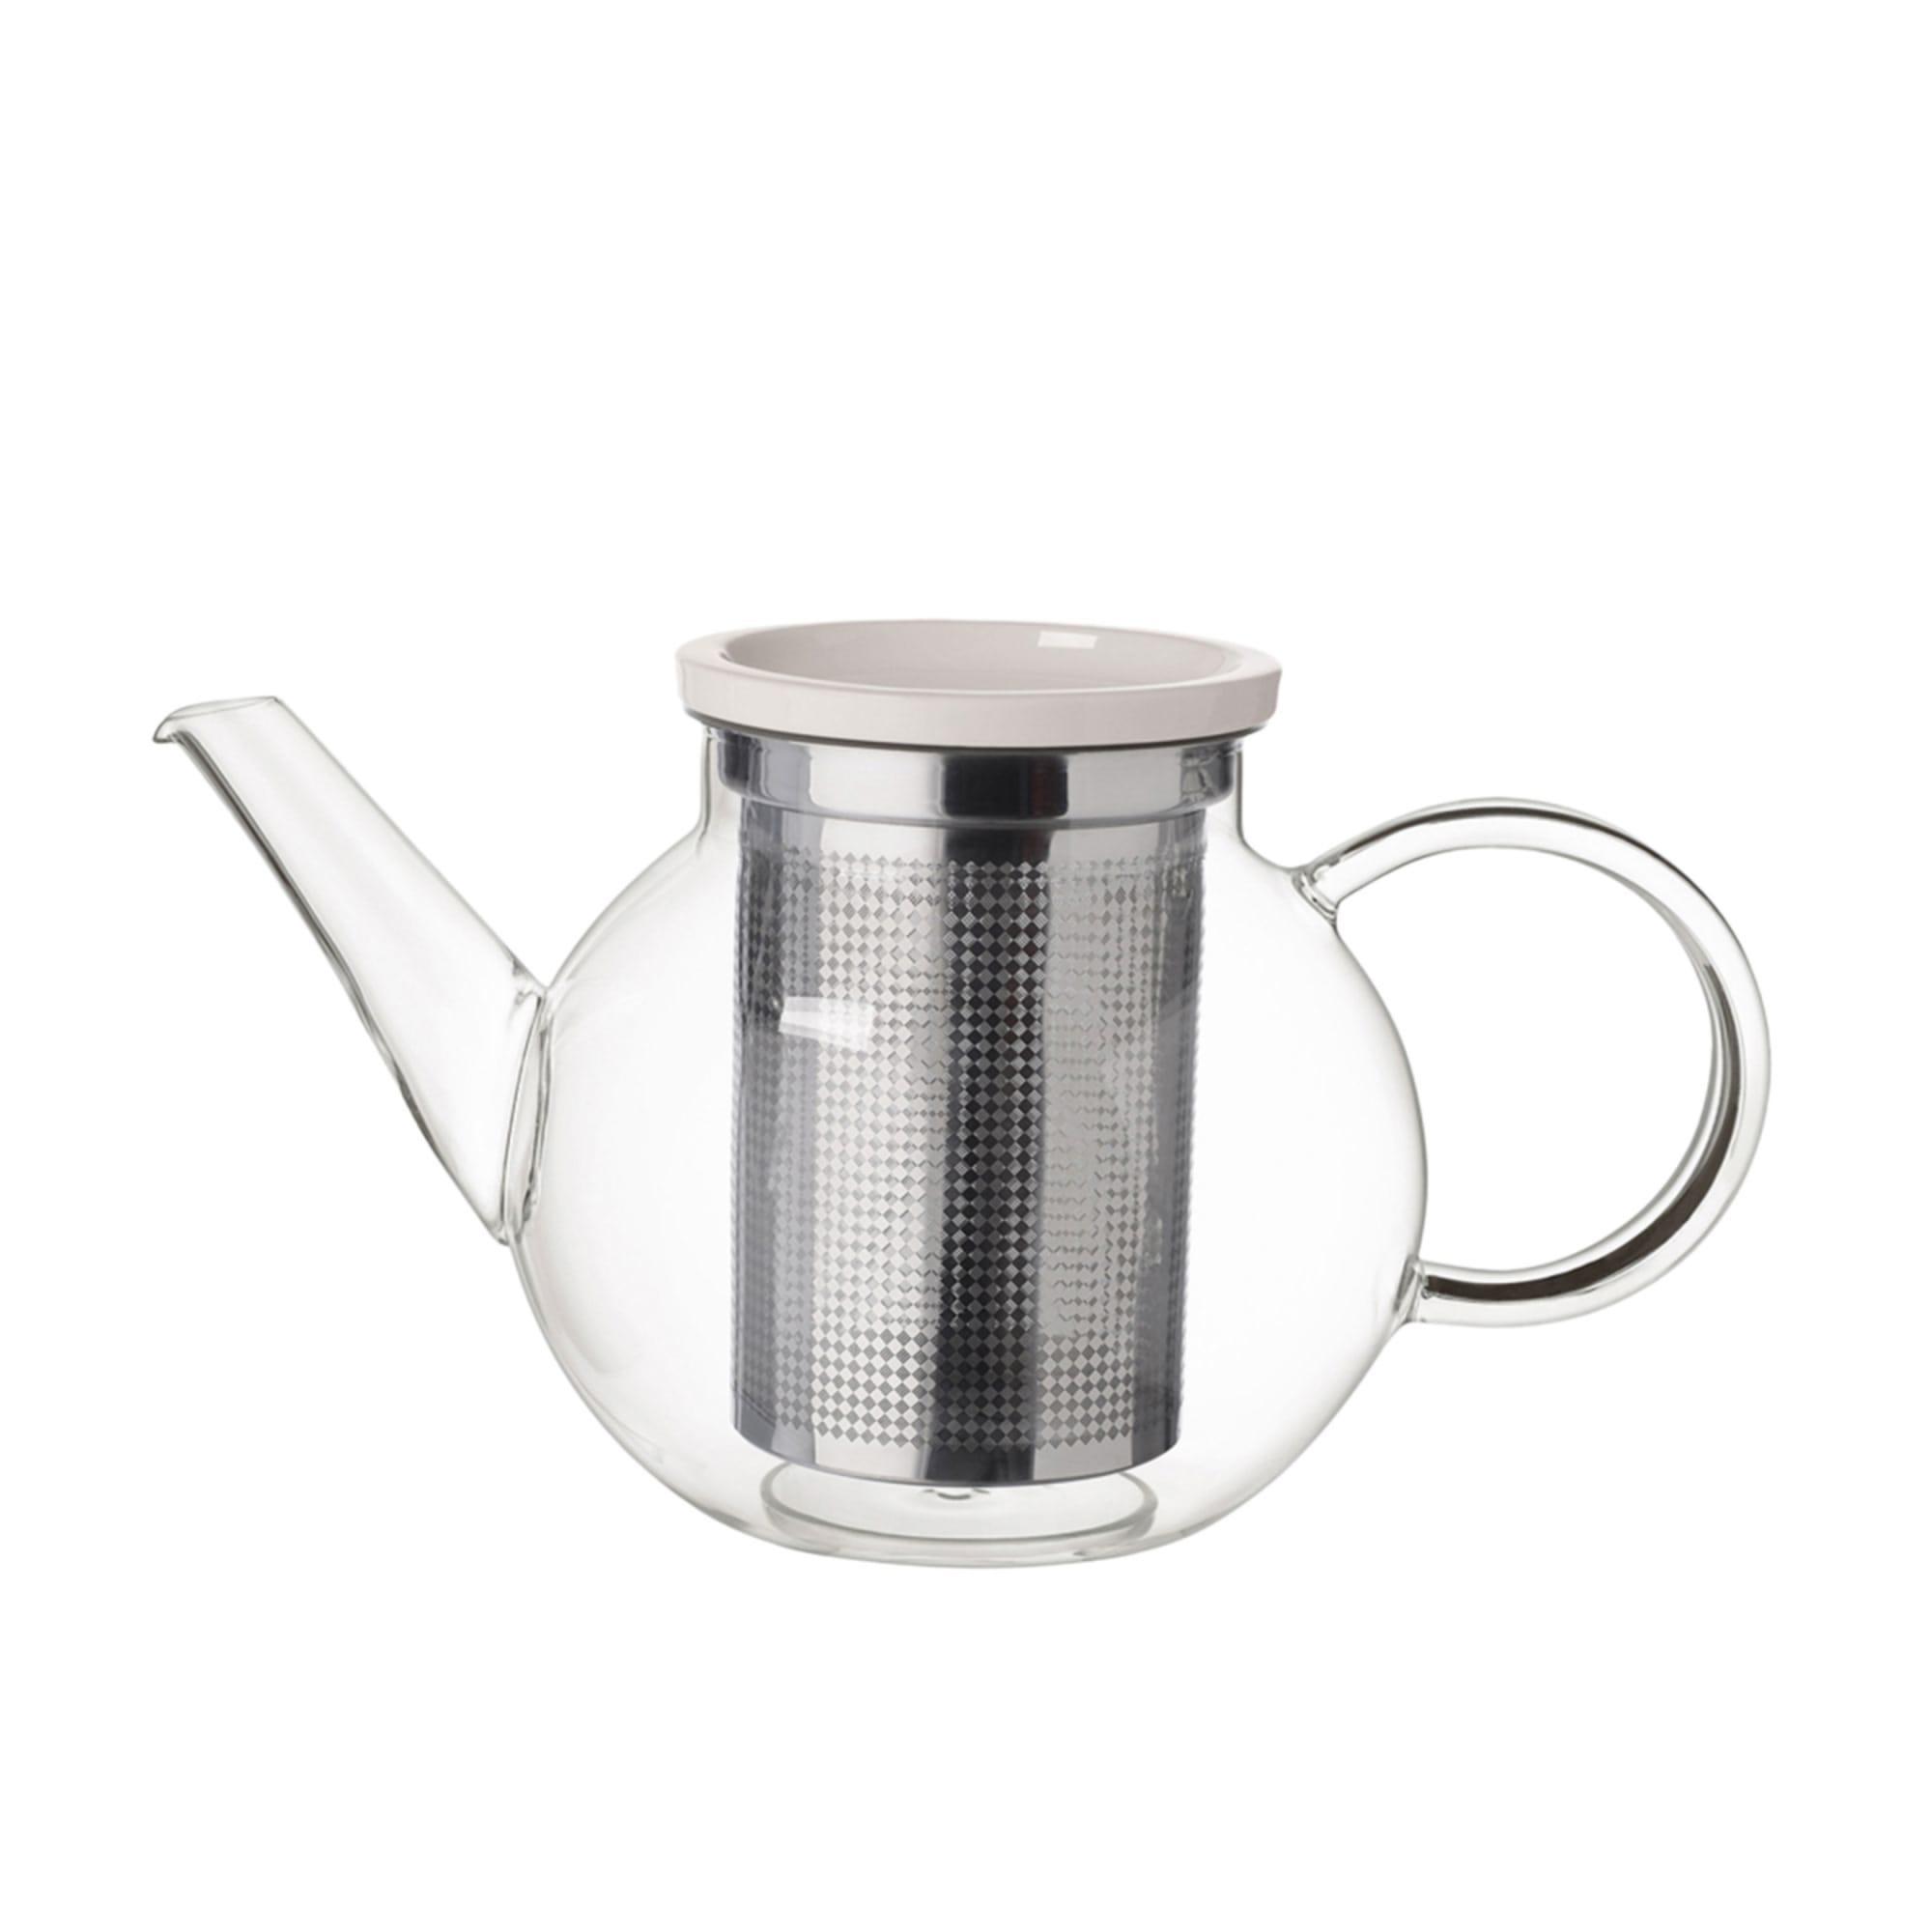 Villeroy Boch Artesano Hot Cold Beverages Teapot with Strainer 1L Image 1